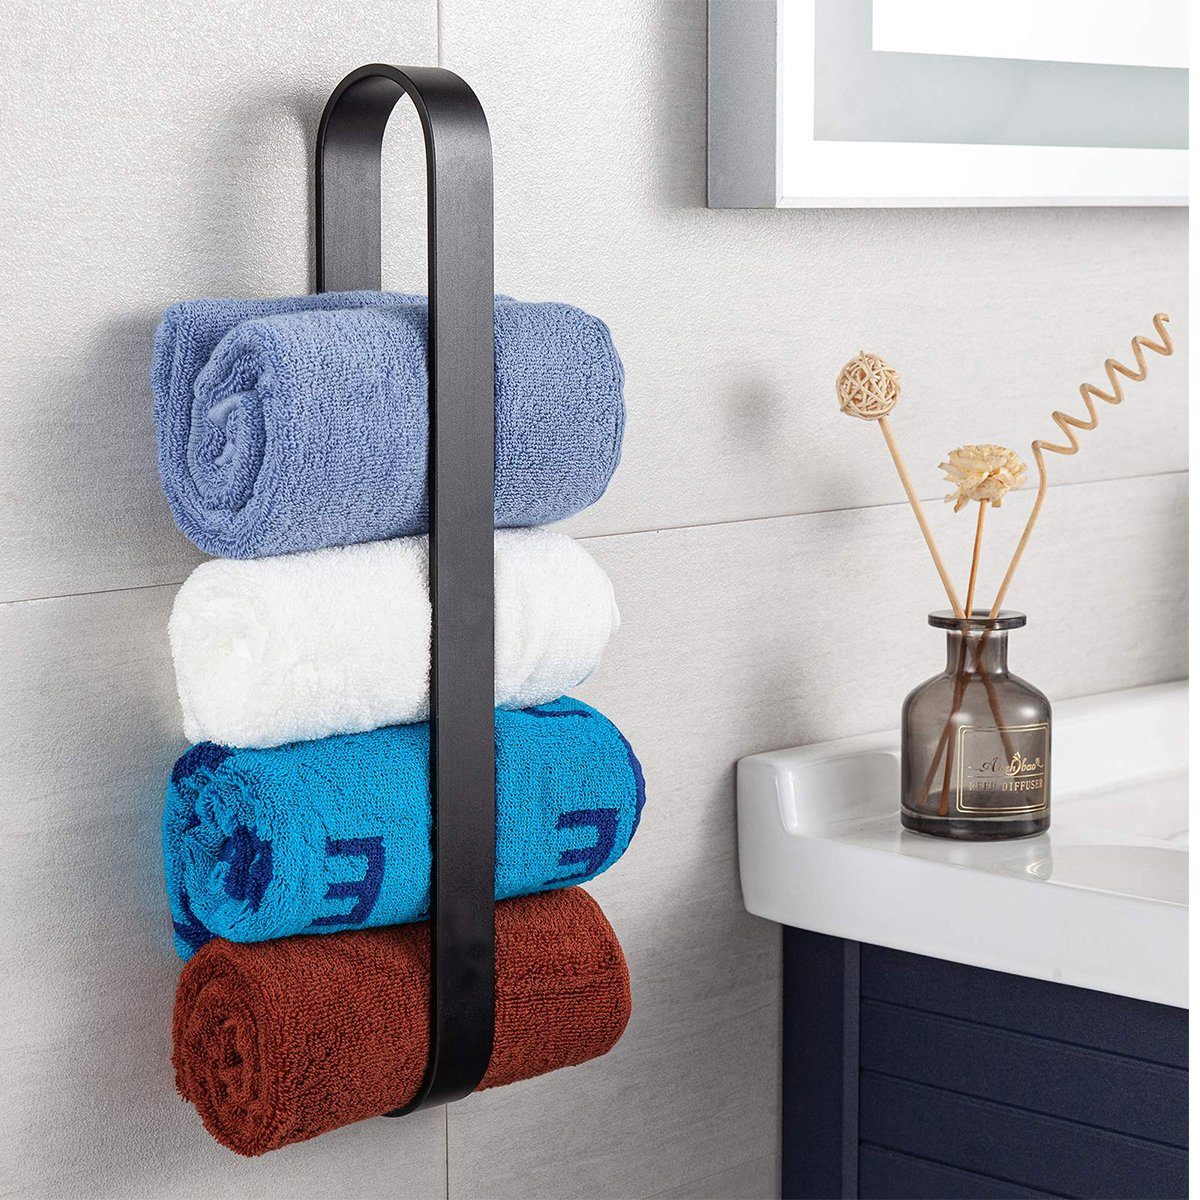 Bad Bohren Gästehandtuchhalter Ohne Jormftte Selbstklebend Handtuchhalter Handtuchhalter